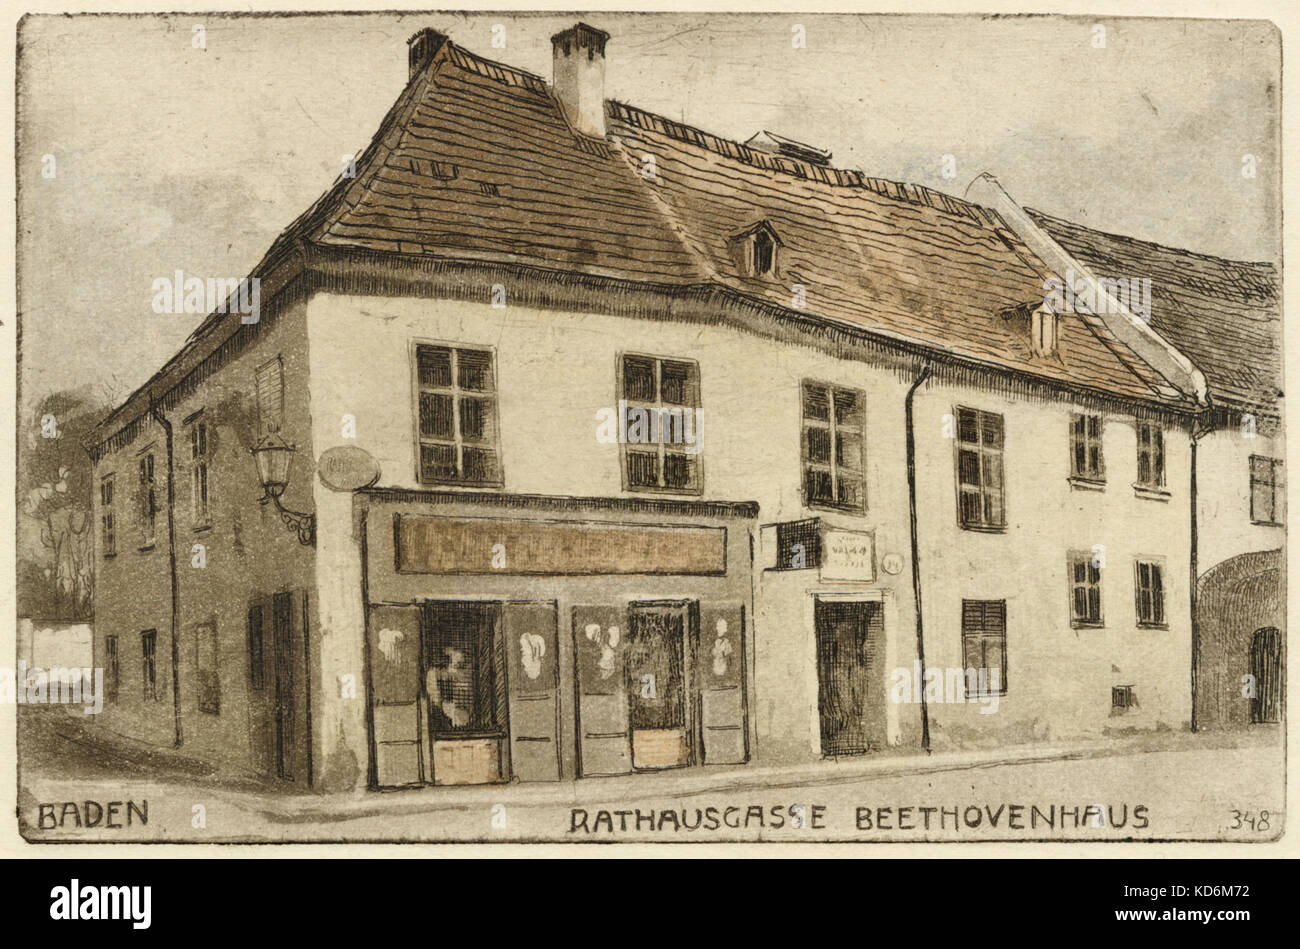 Ludwig van Beethoven 's casa en Rathausgasse, Baden. Dibujado por L V Pollak. Compositor alemán, el 17 de diciembre de 1770 - 26 de marzo de 1827. Su favorito de la ciudad de veraneo donde permaneció por su salud durante 1803 - 1825. En 1823 se concluyeron los trabajos de la Novena Sinfonía en Rathausgasse. Tarjeta postal Foto de stock